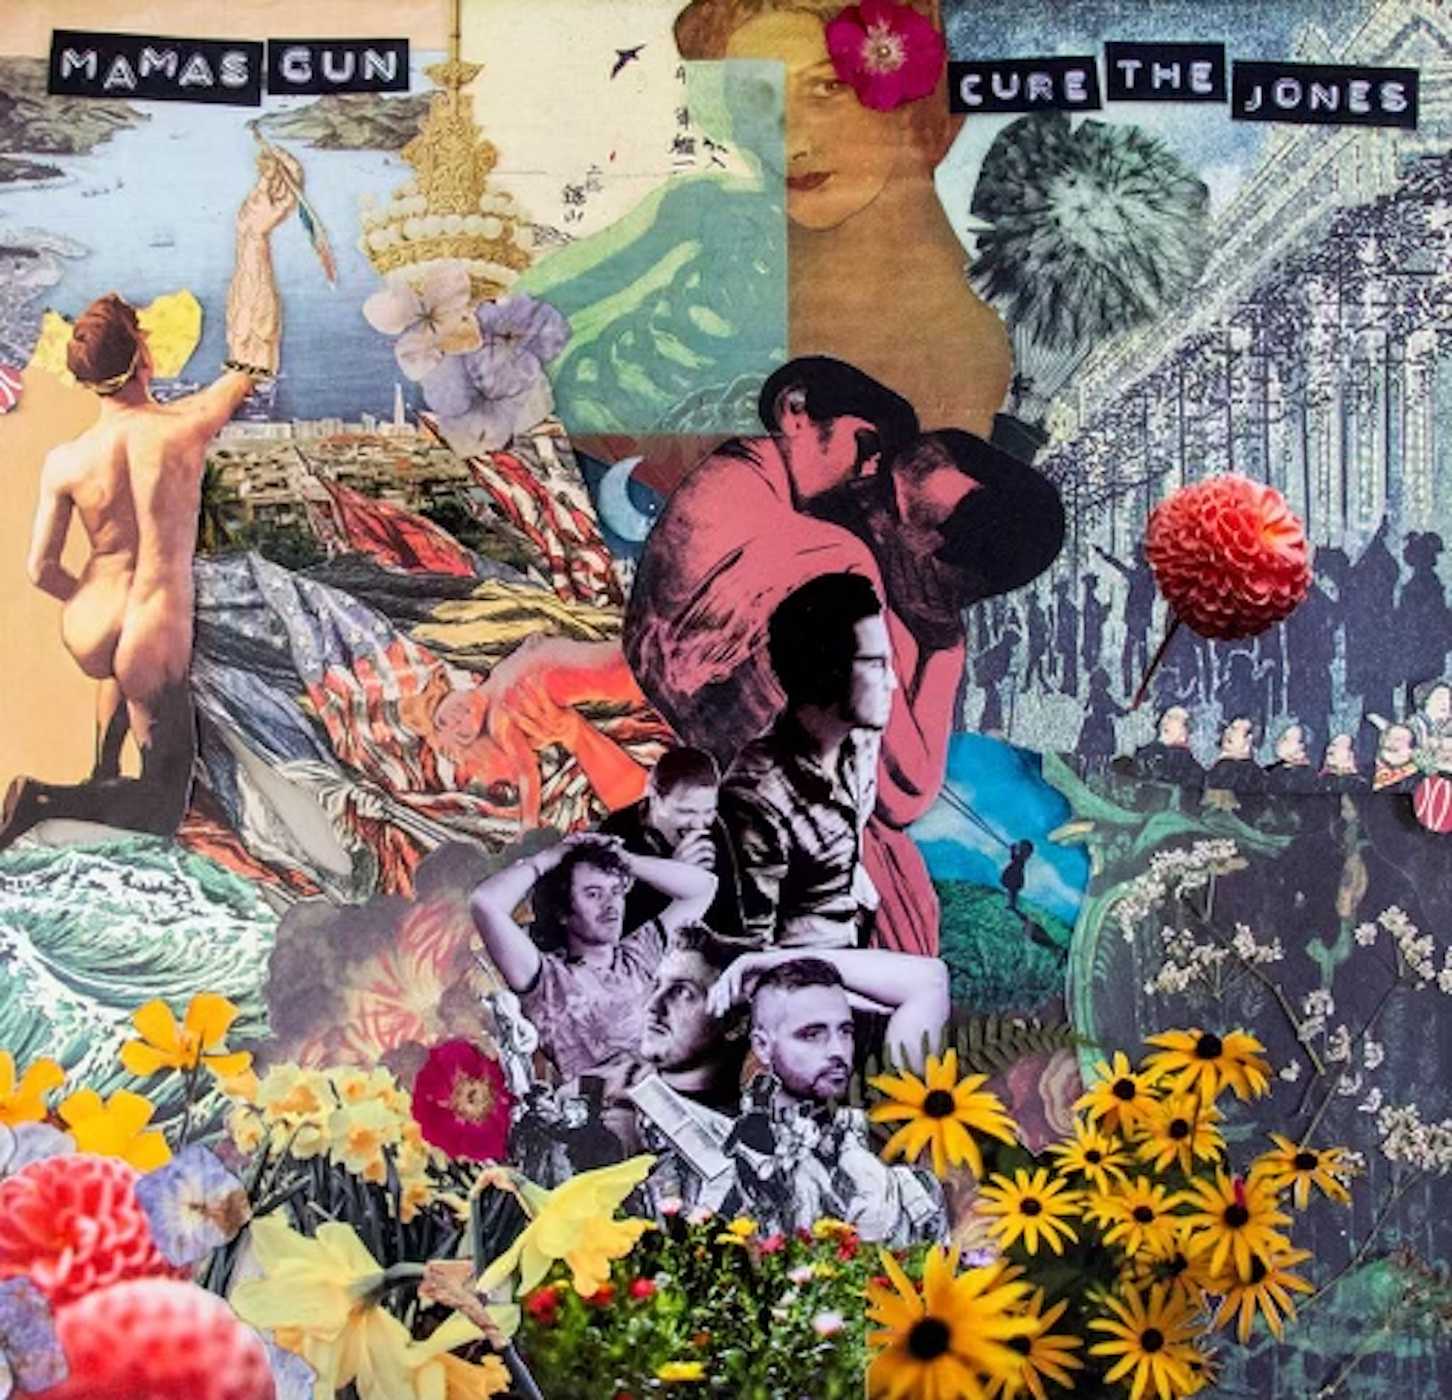 Cure The Jones album cover